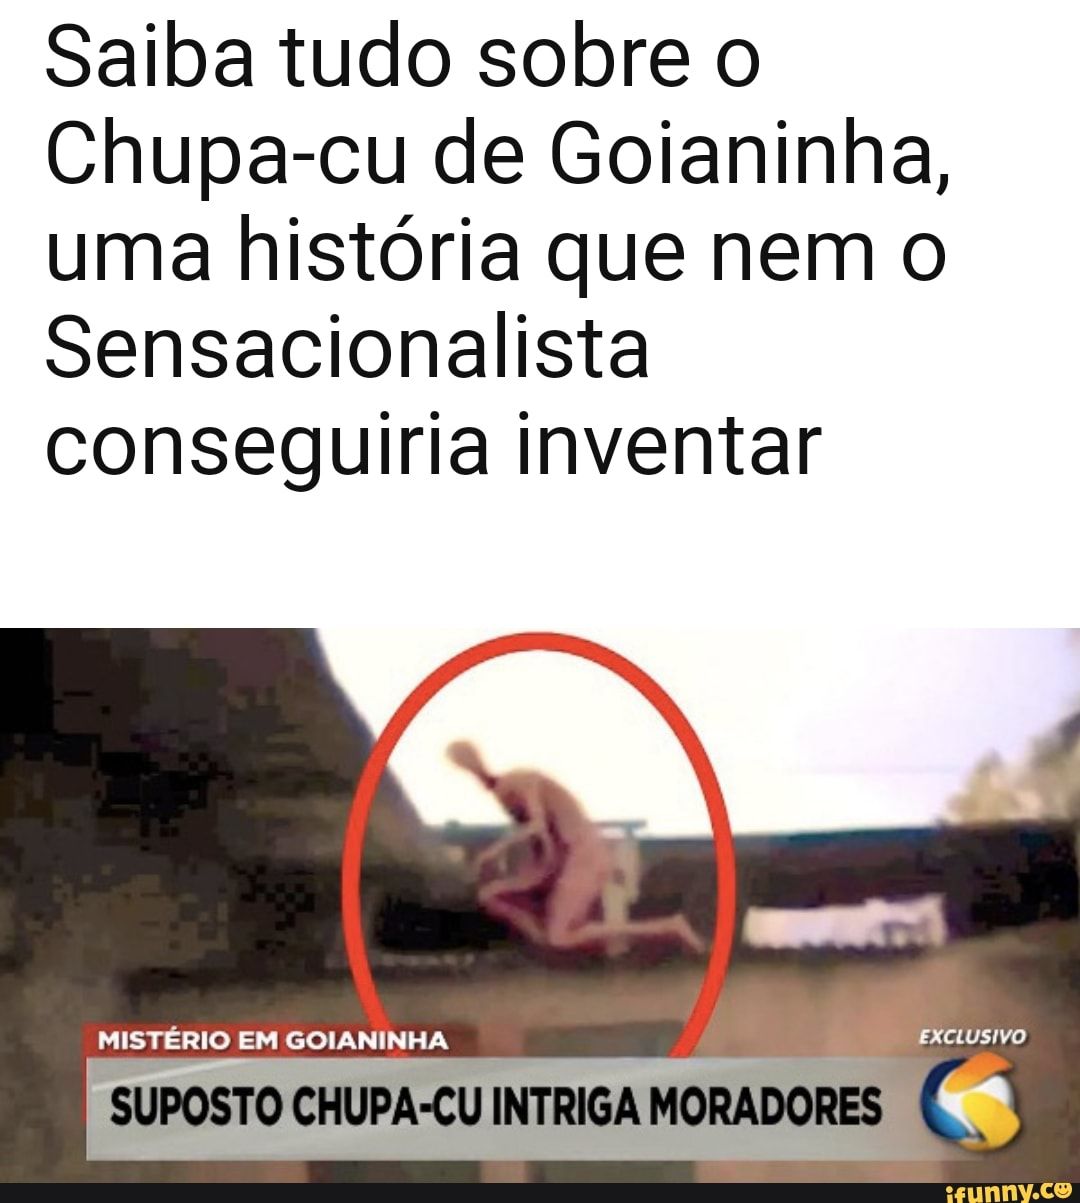 Chupa cu é encontrado vivo em Goiás